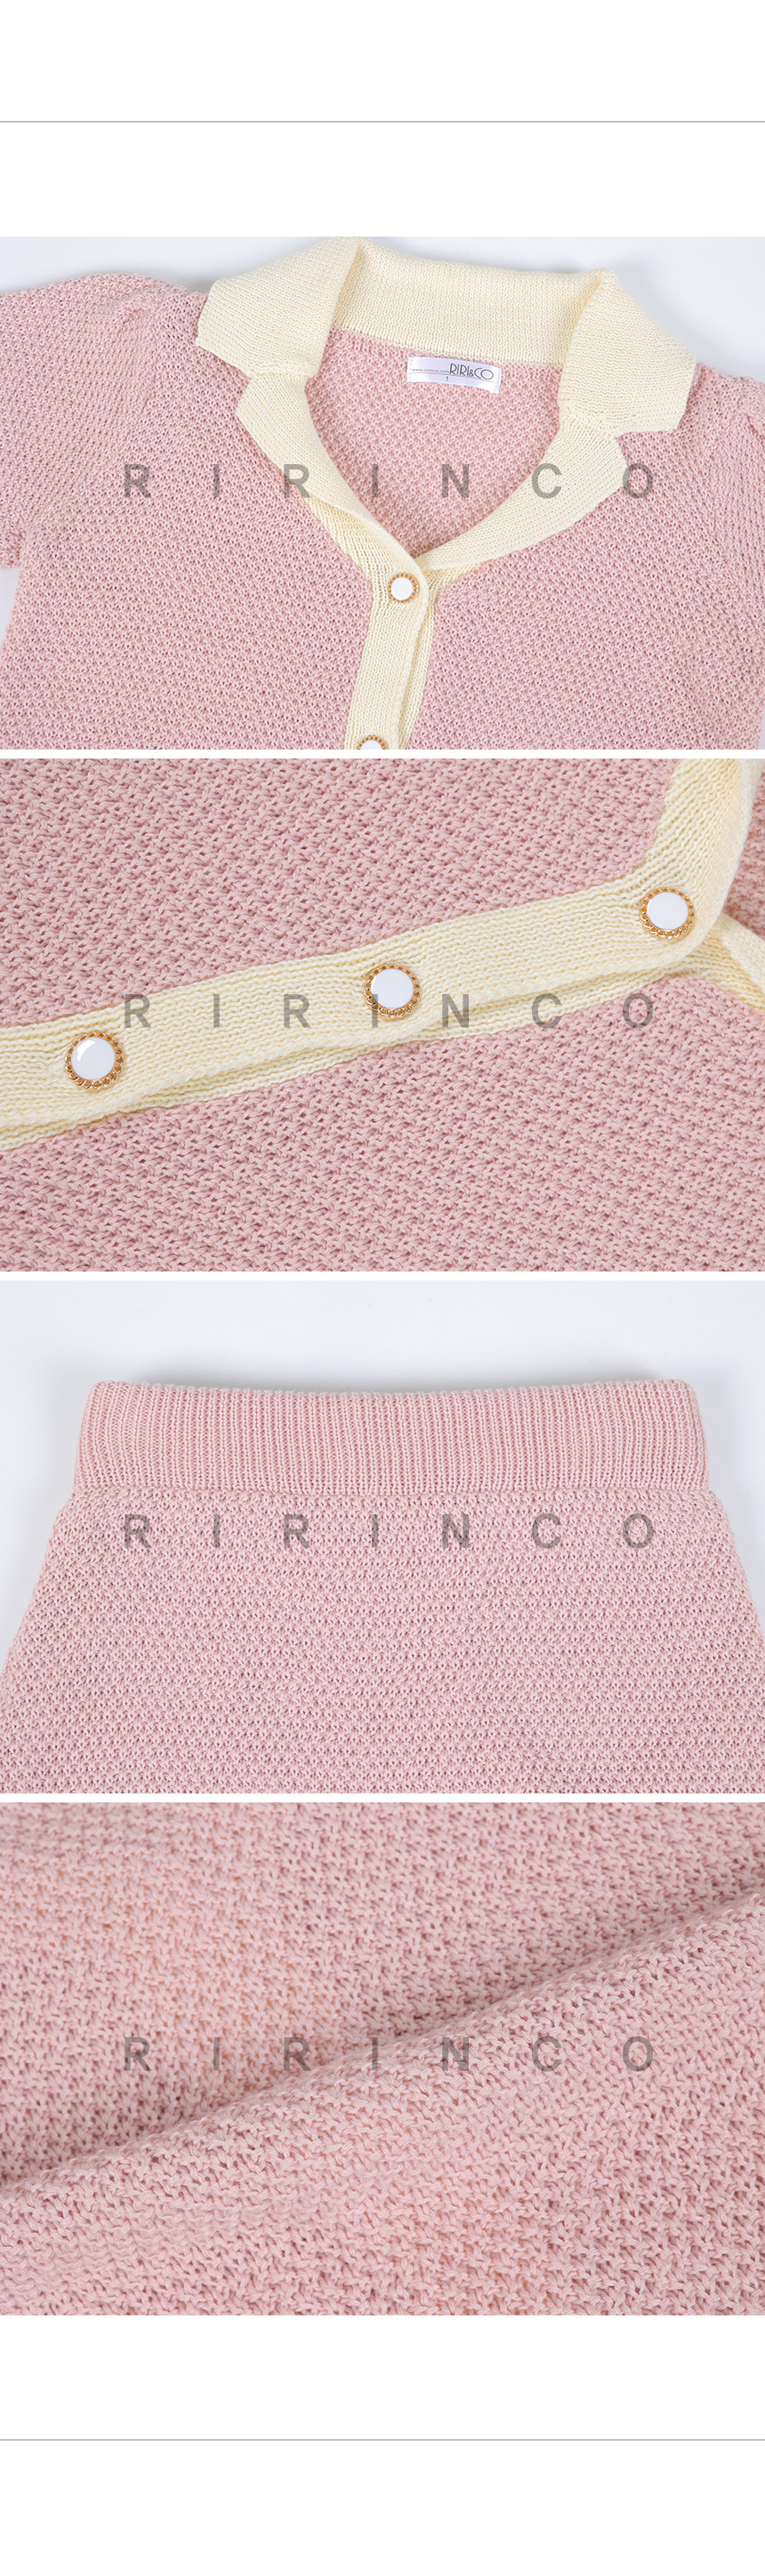 RIRINCO 配色ニットオープンカラーカーディガン&ミニスカート上下セット